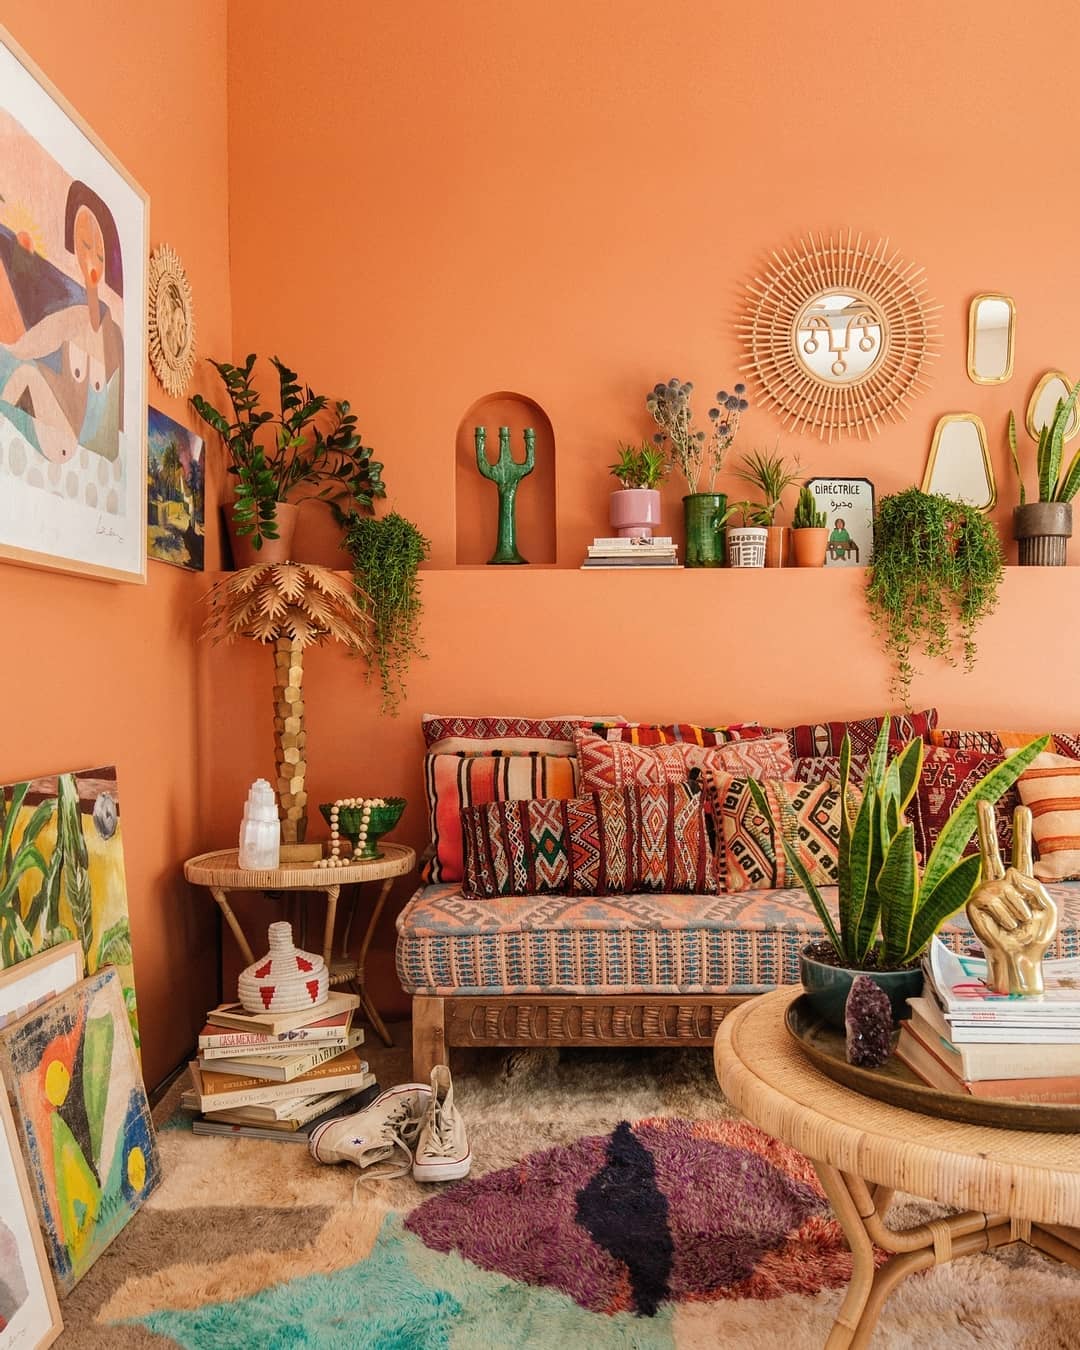 Sala com paredes pintadas com um tom de laranja vibrante e com decoração de estilo boho.